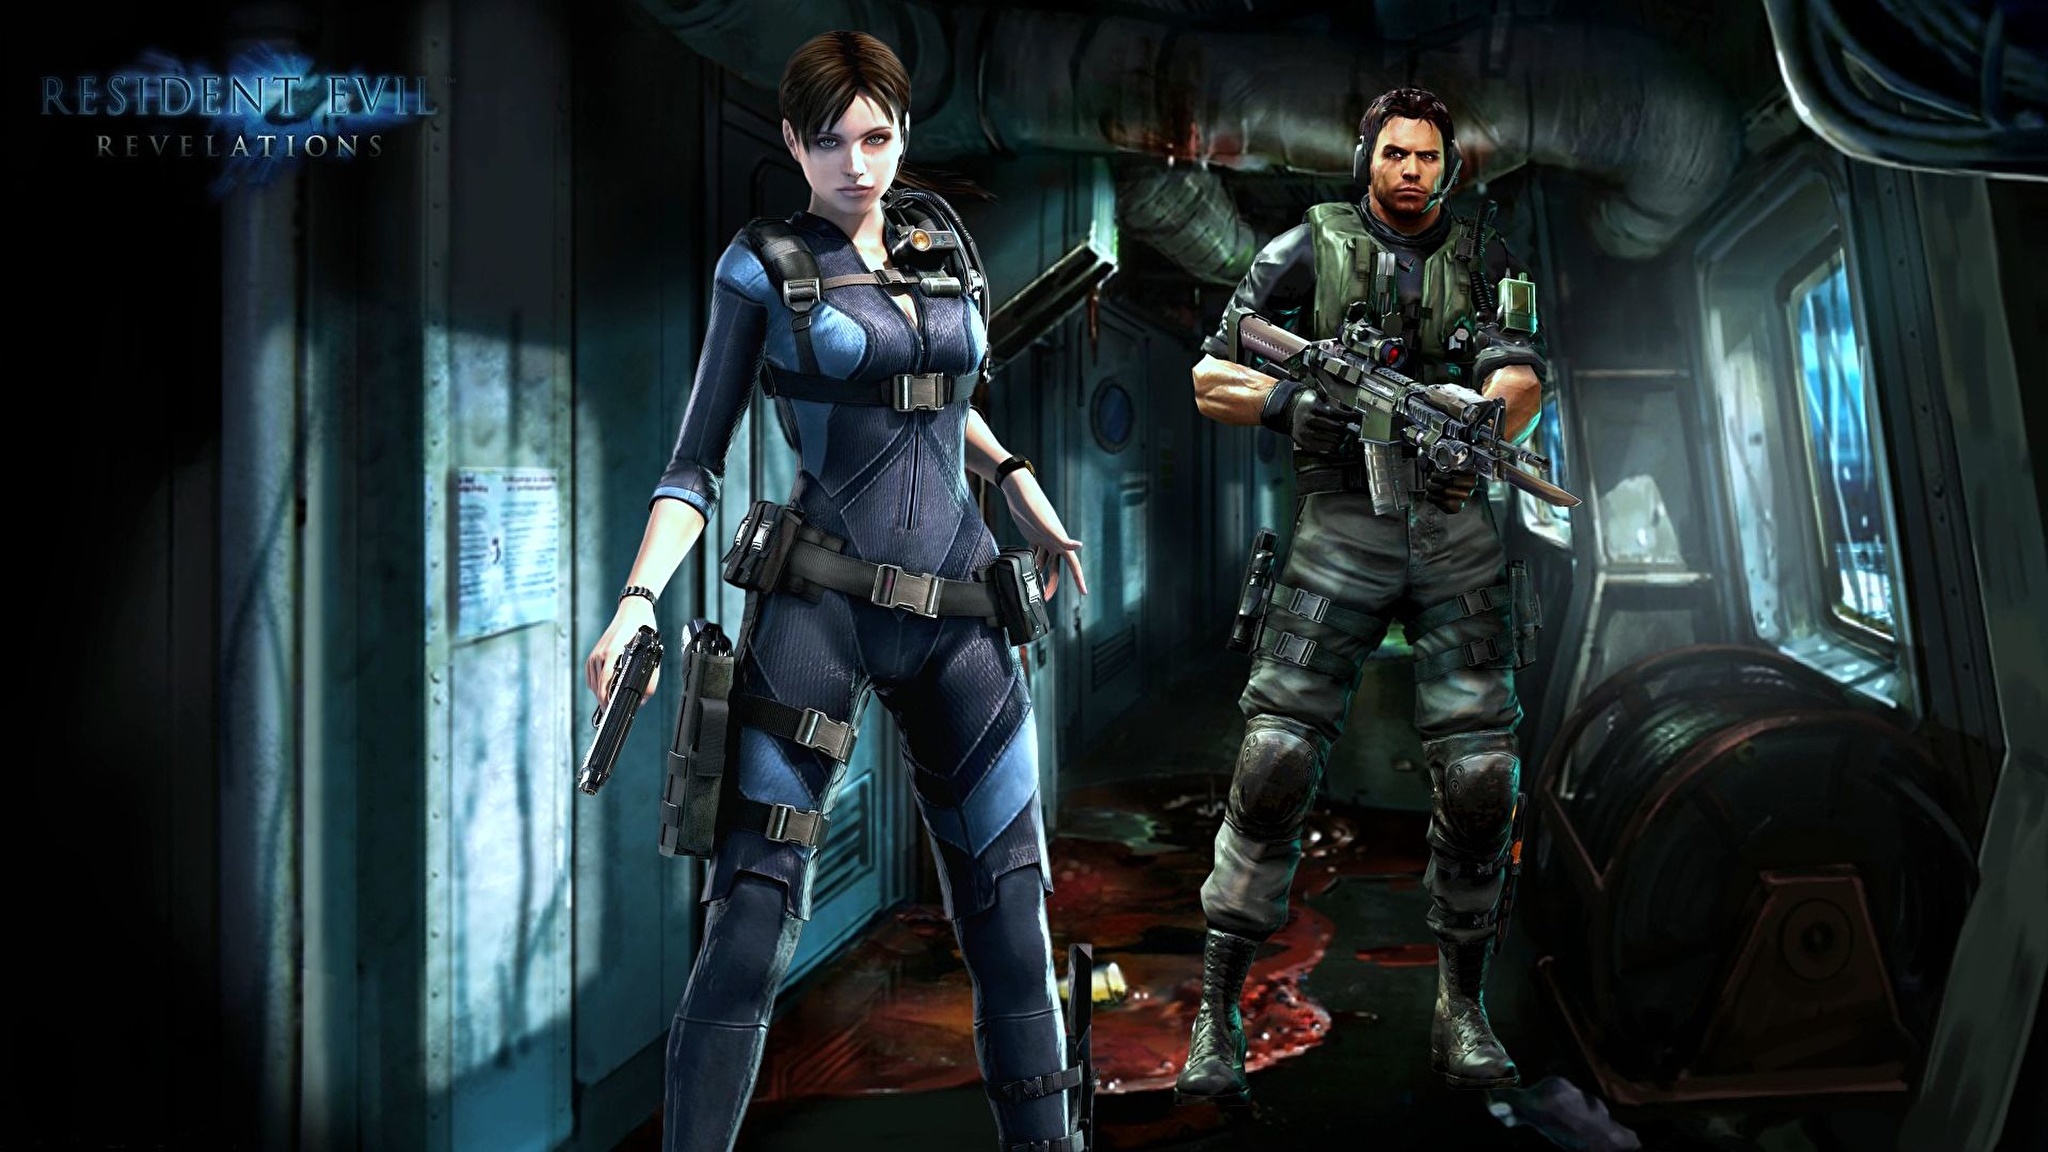 Resident Evil Игры фото 2048x1152 компьютерная игра обои картинки скачать н...